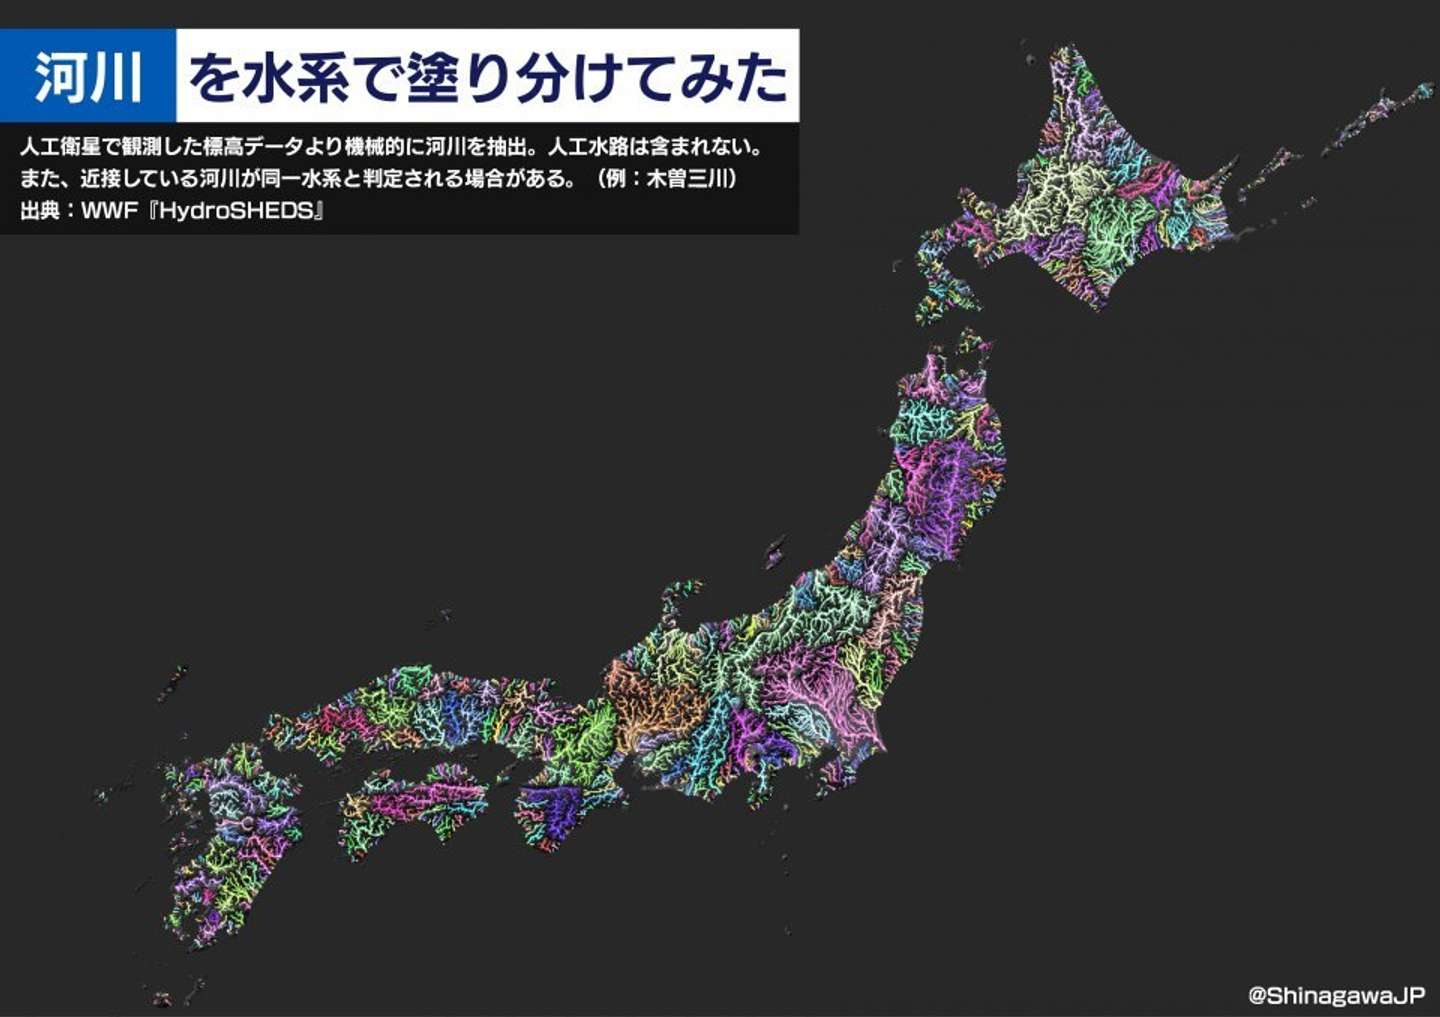 まさに日本列島の 血管 だ 川だけで描いた地図 からあふれ出す生命力がすごすぎる 21年6月17日 エキサイトニュース